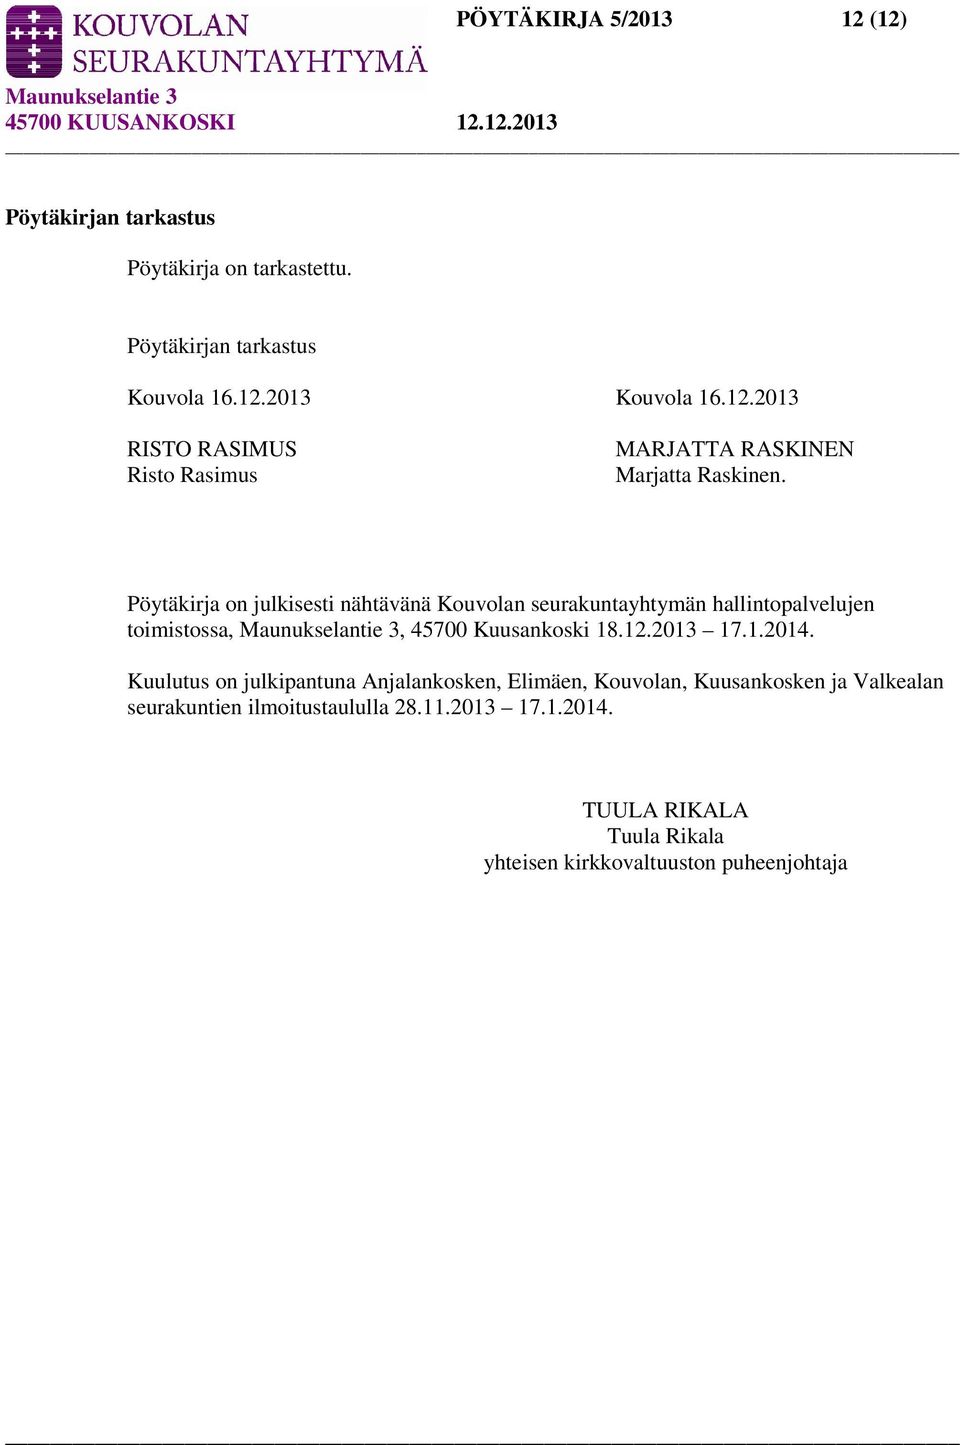 Kuulutus on julkipantuna Anjalankosken, Elimäen, Kouvolan, Kuusankosken ja Valkealan seurakuntien ilmoitustaululla 28.11.2013 17.1.2014.